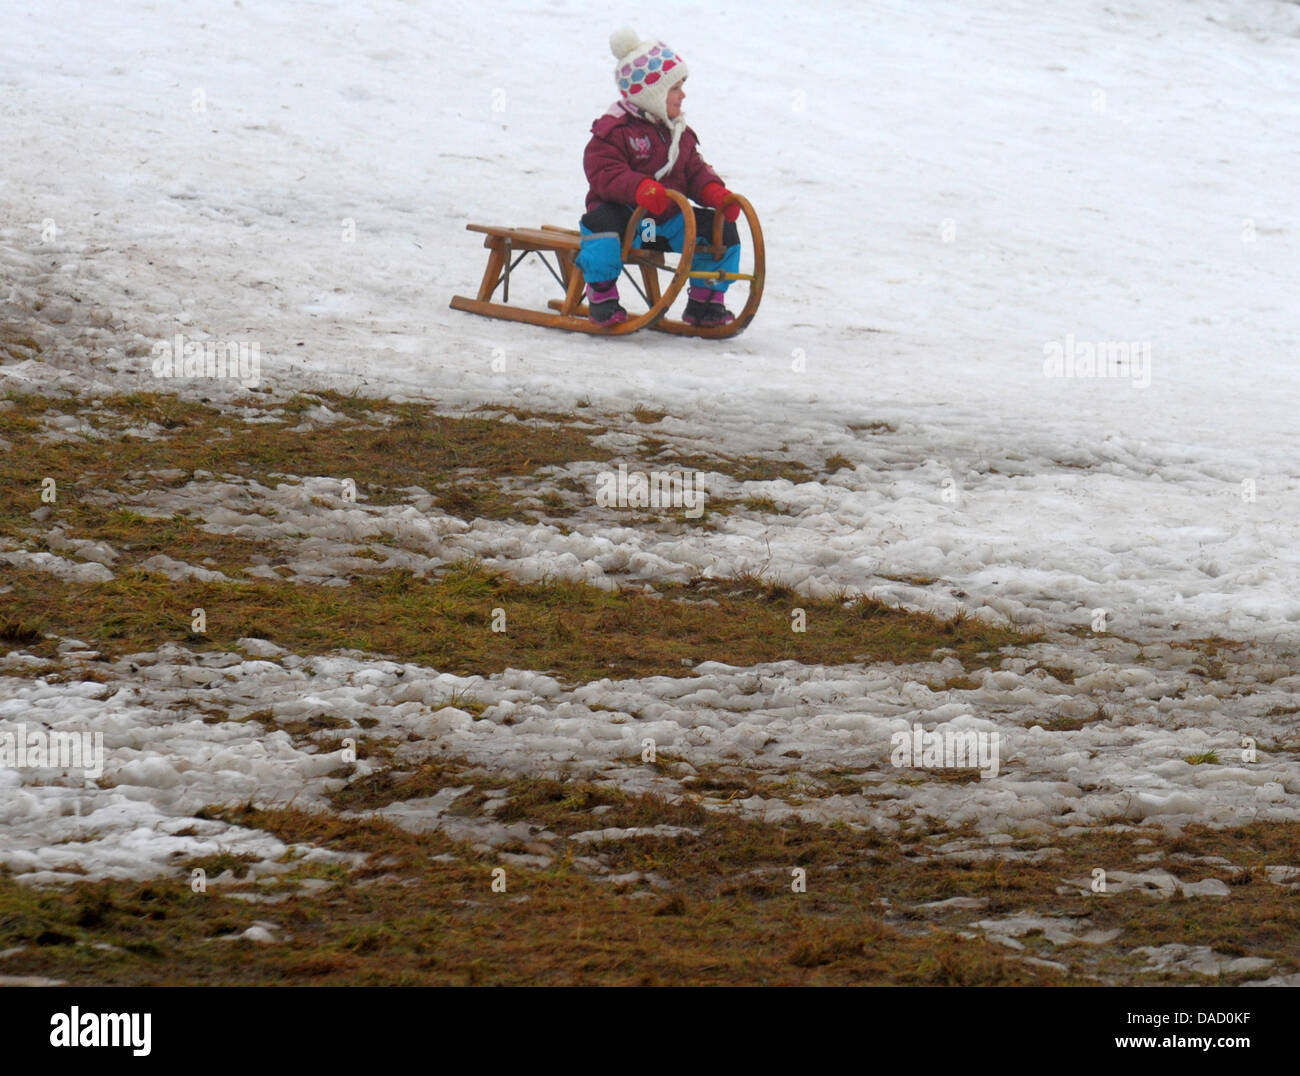 Ein Kind Schlitten hinunter eine Skipiste, der kaum fällt Schnee in Altenberg, Sachsen, 28. Dezember 2011. Die milden Temperaturen machen den Einsatz von Schneekanonen unmöglich. Foto: Matthias Hiekel Stockfoto